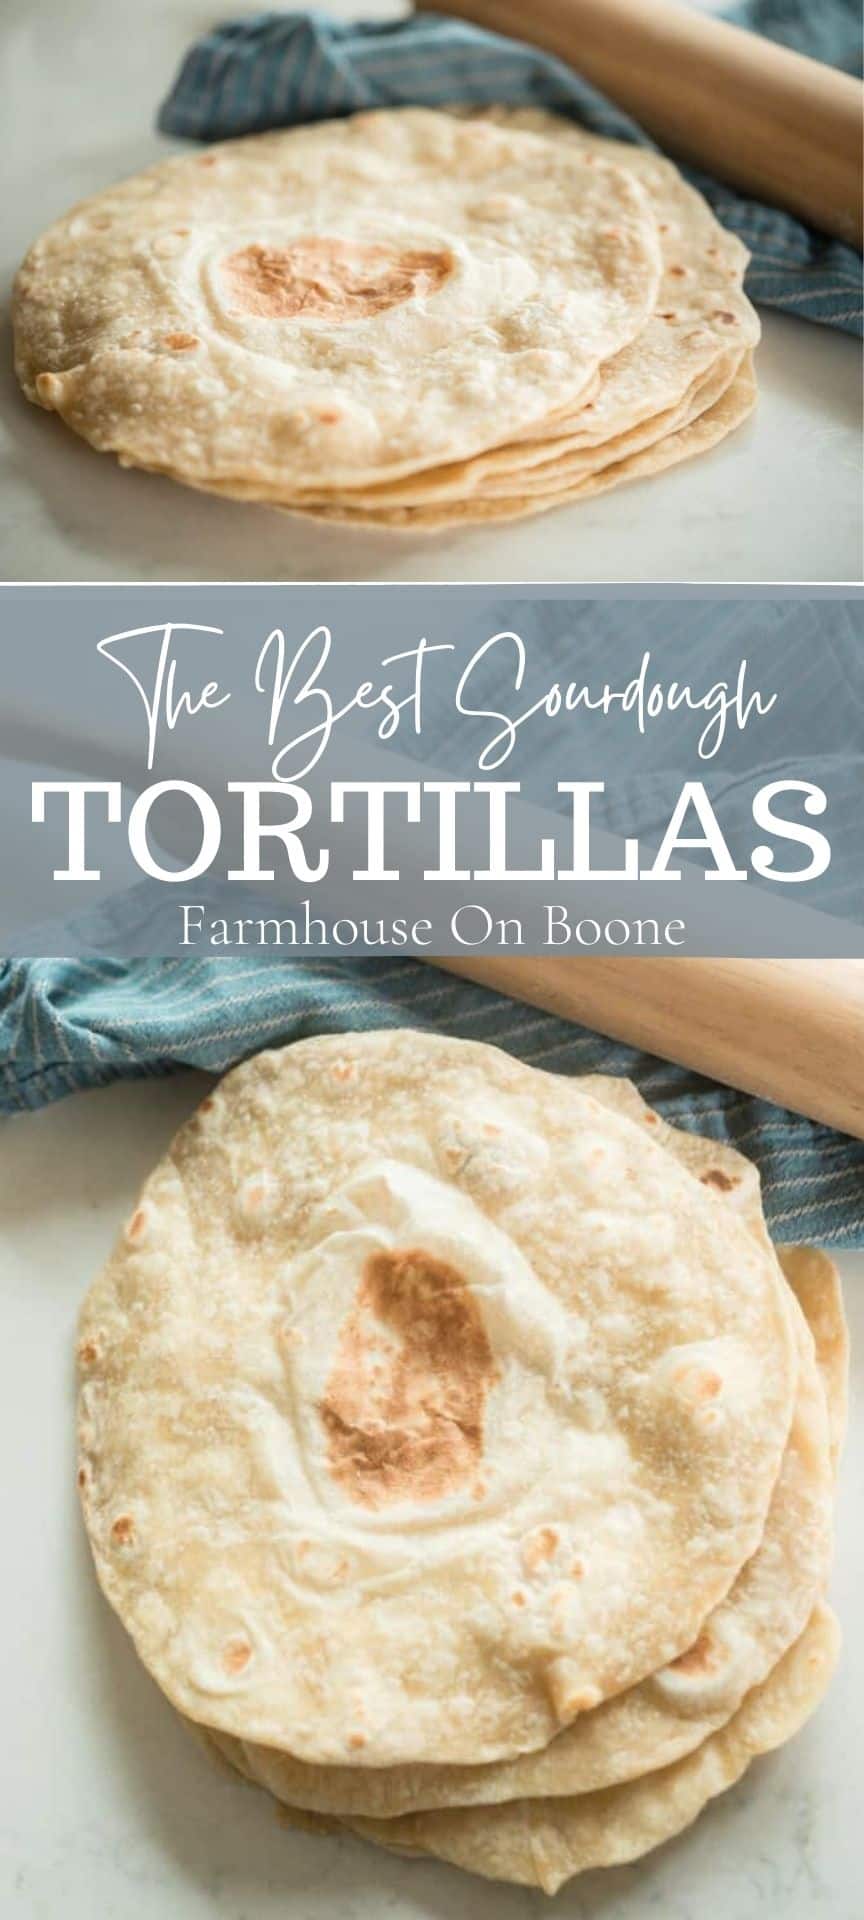 https://www.farmhouseonboone.com/wp-content/uploads/2022/03/Sourdough-tortillas-5-1.jpg